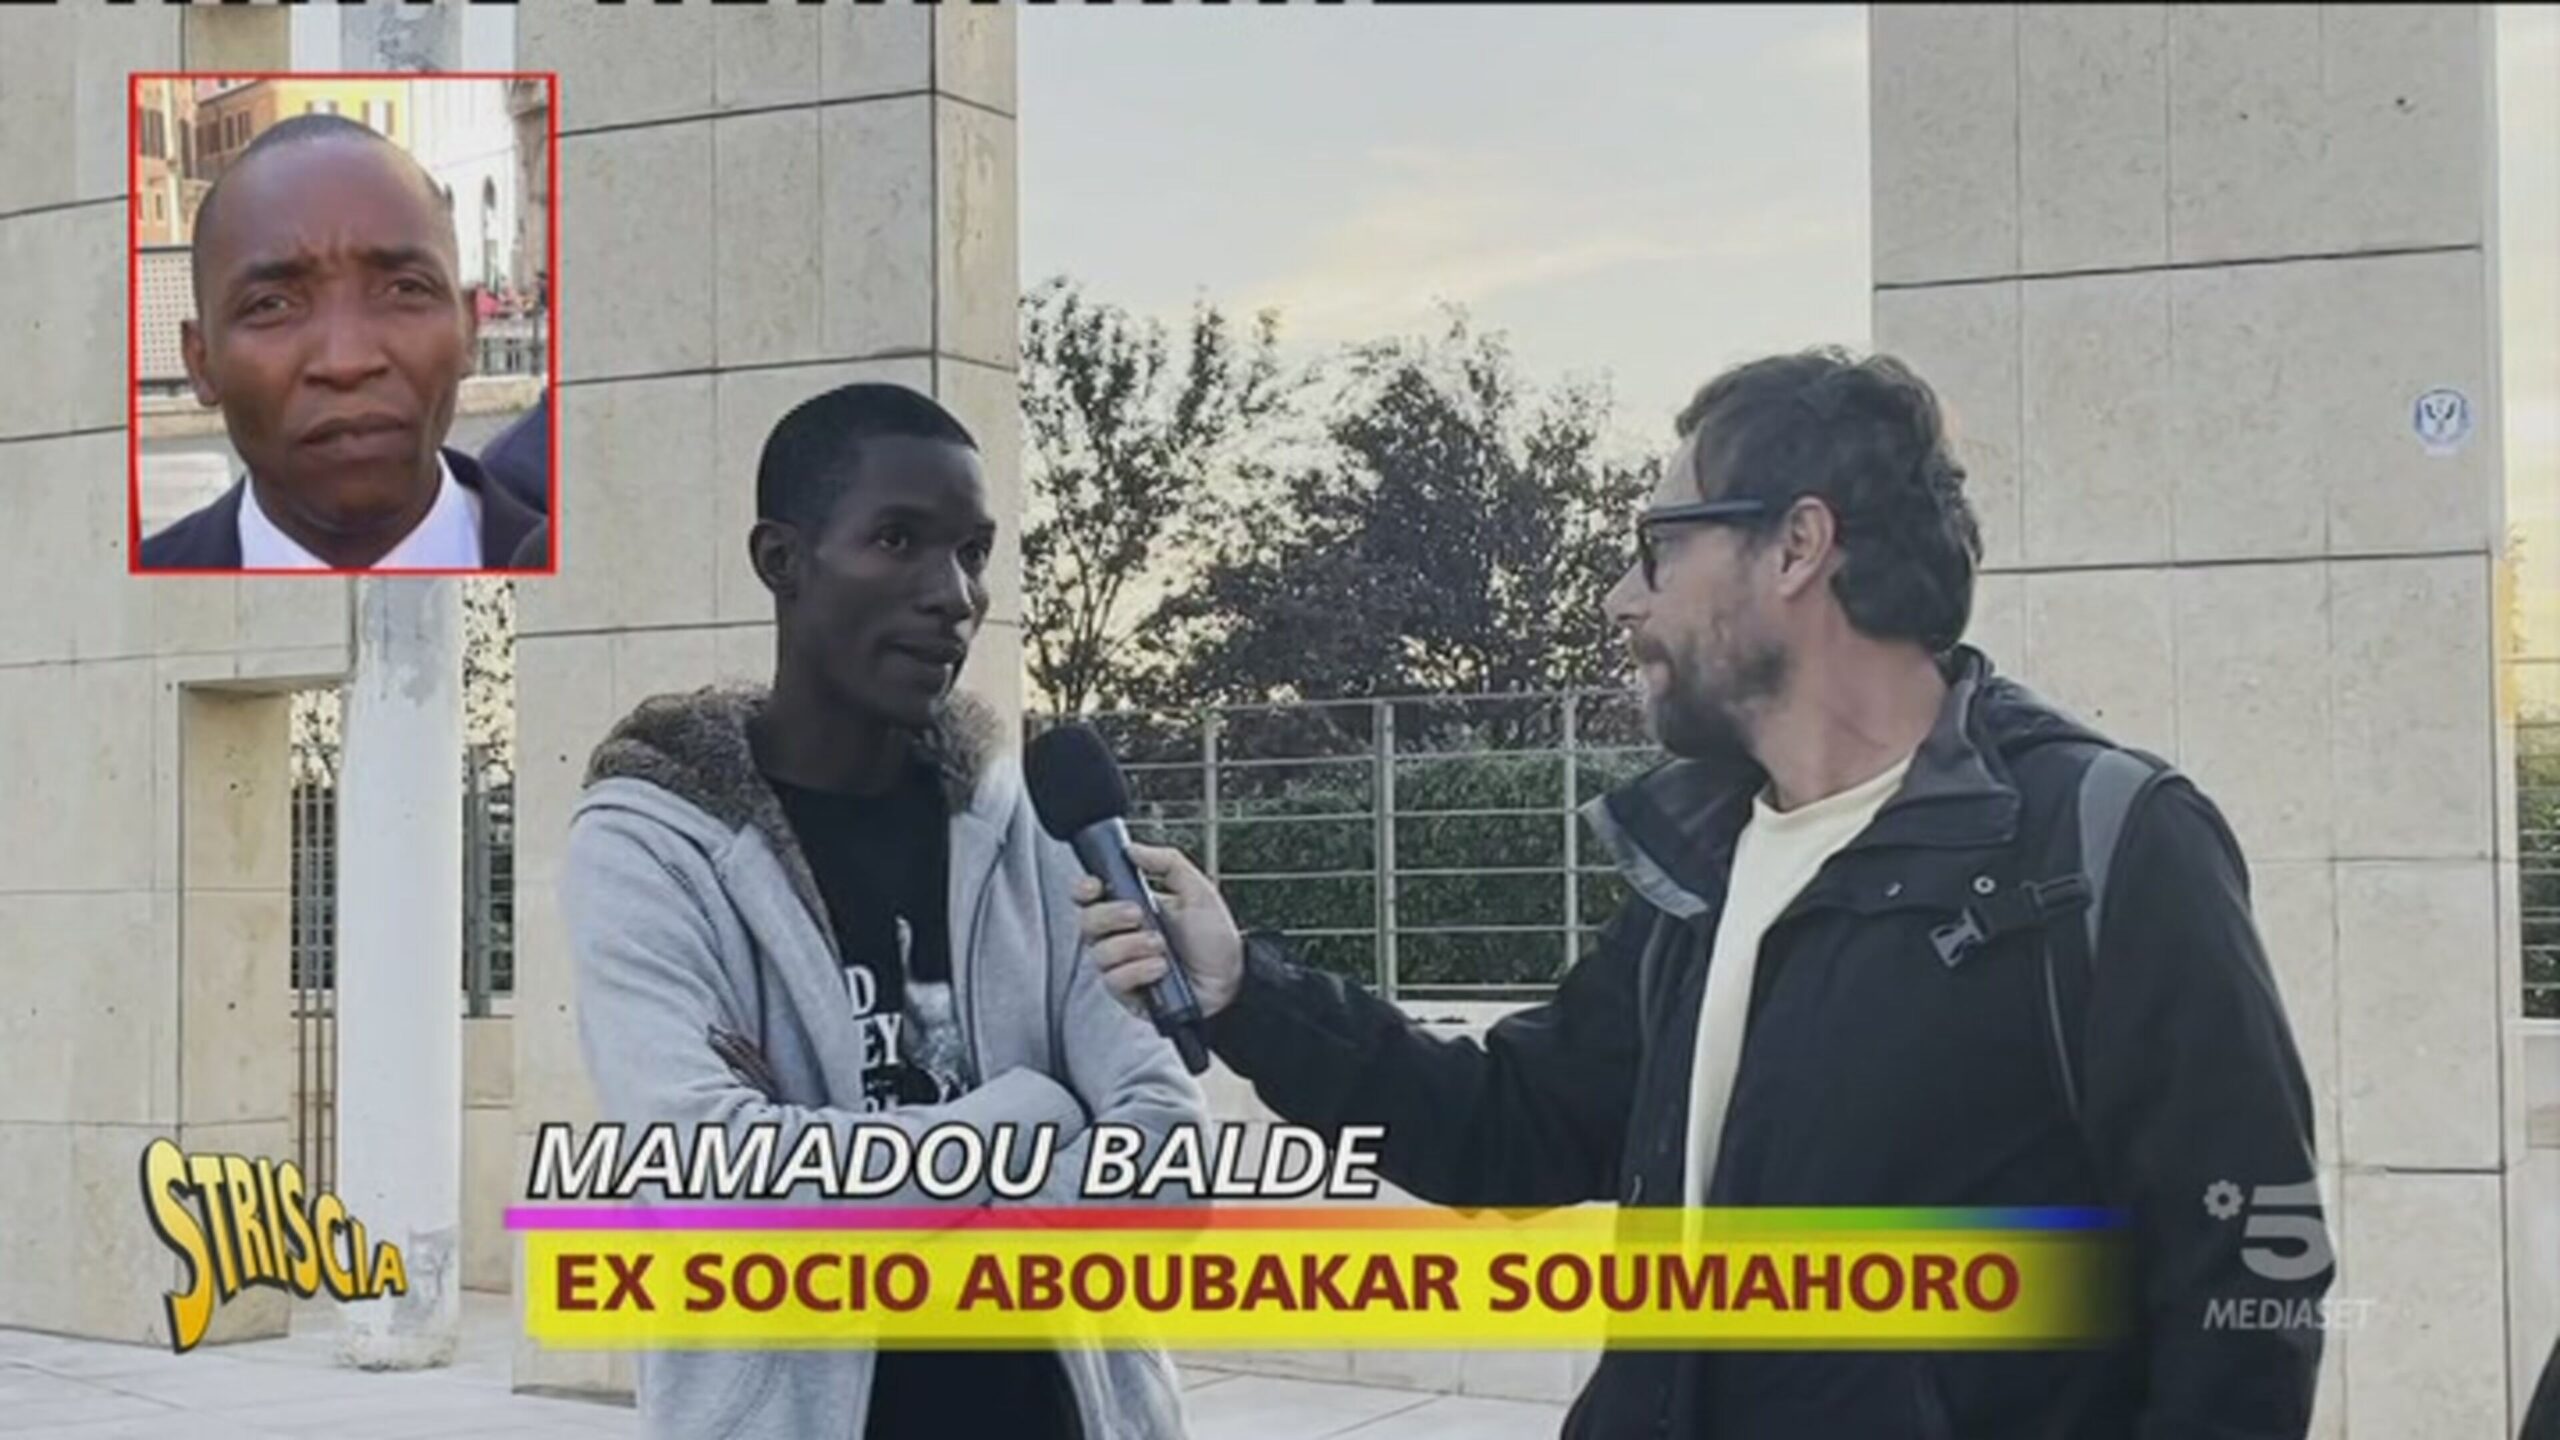 Caso Aboubakar, parla l’ex socio di Soumahoro